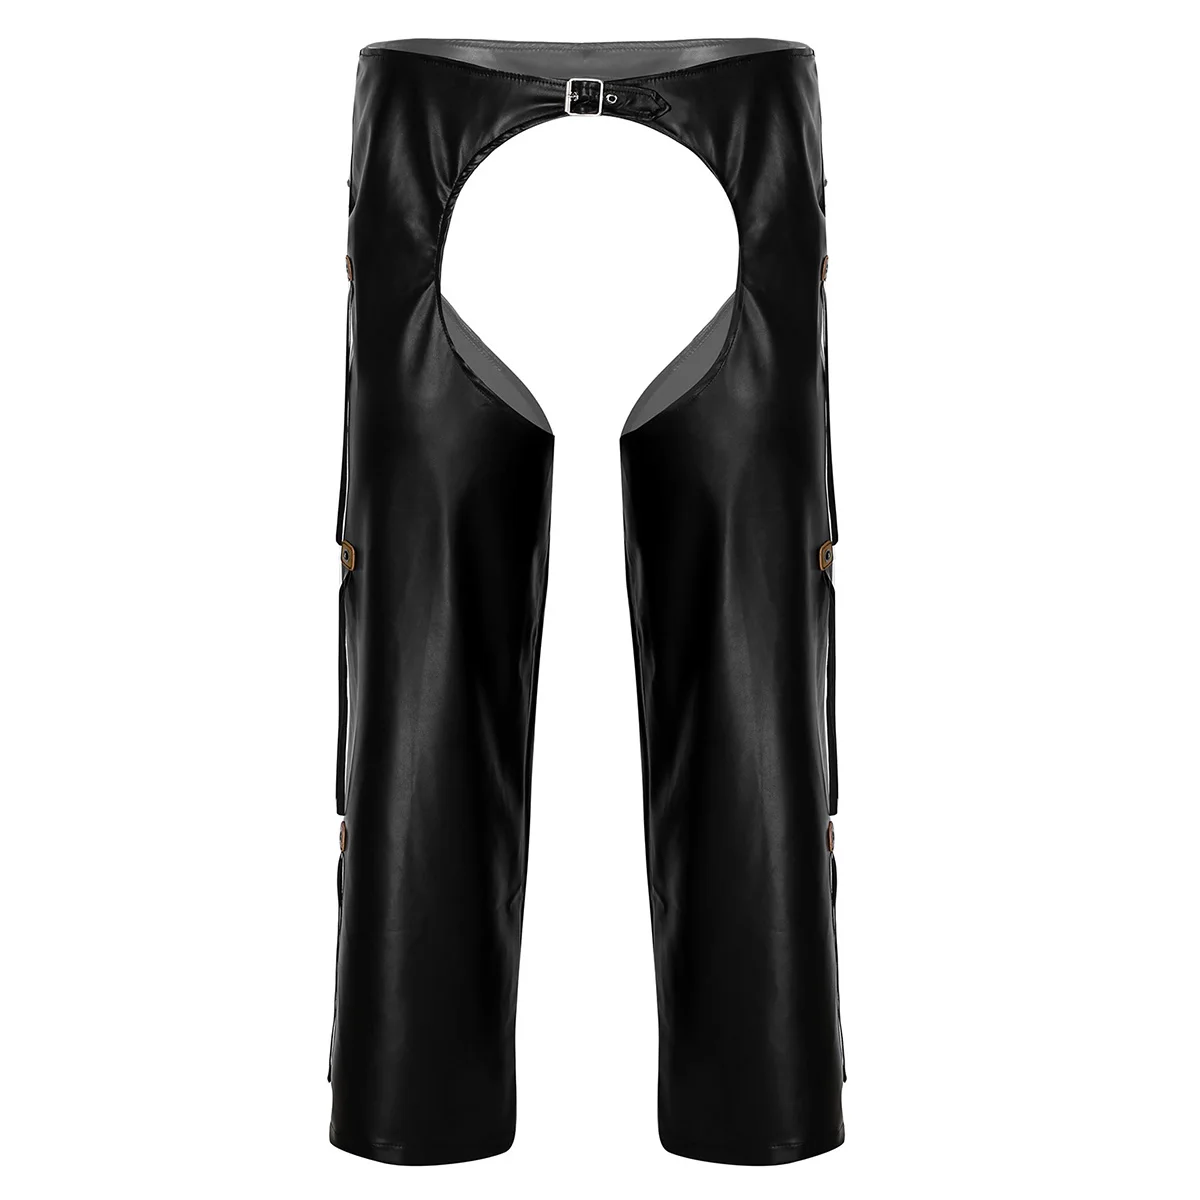 Мужские черные ковбойские сексуальные костюмы из искусственной кожи с вырезами, с бахромой, с пряжкой, с открытой промежностью, свободные длинные штаны - Цвет: Black